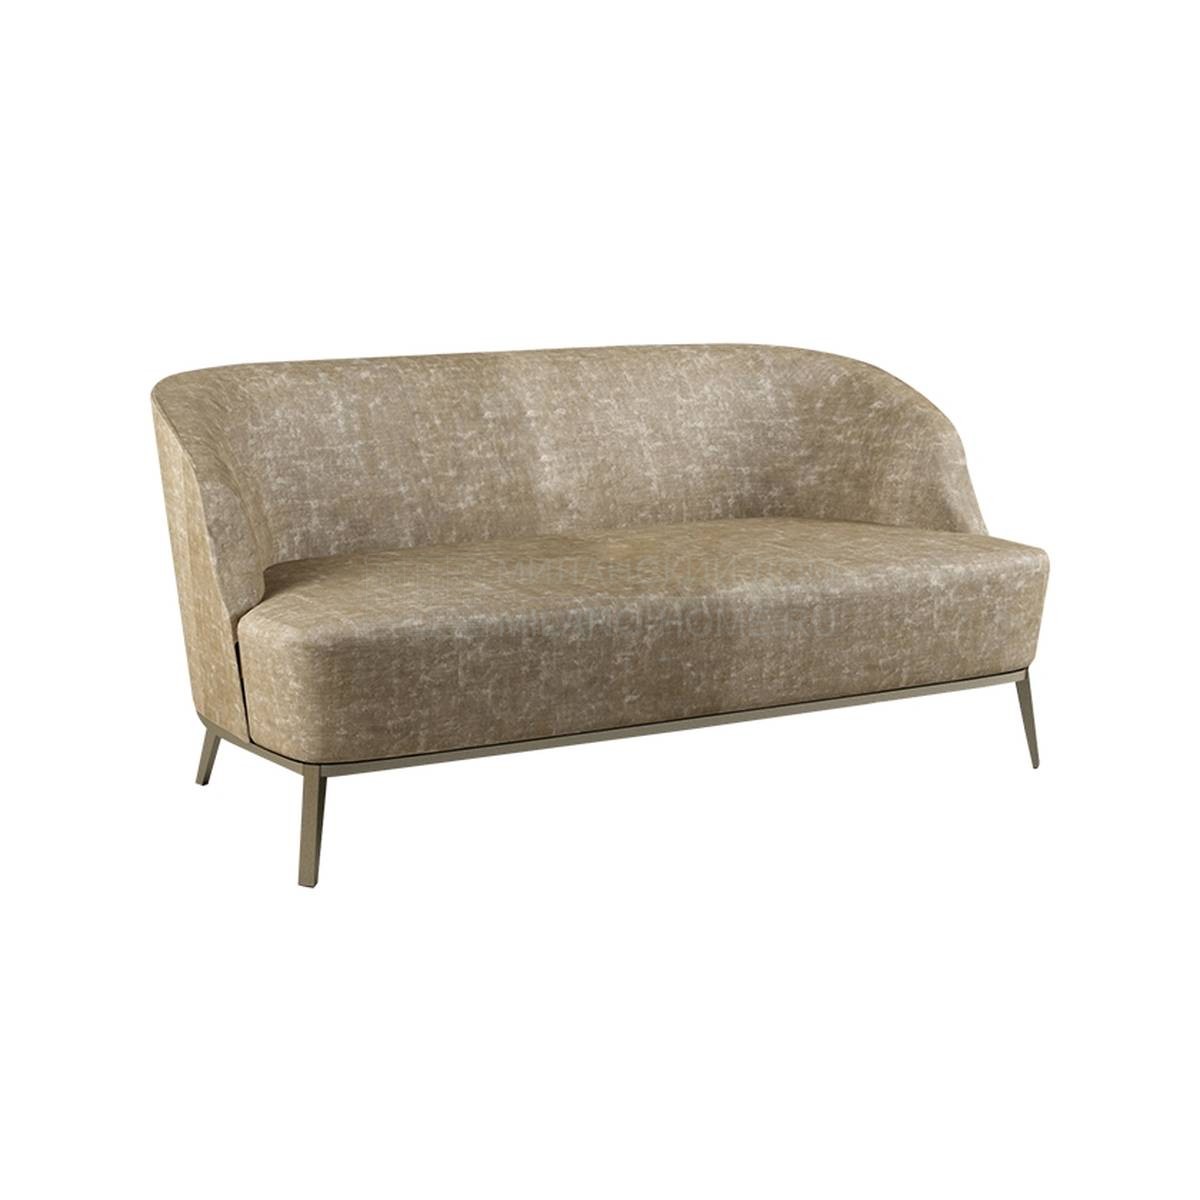 Прямой диван Venice sofa из Италии фабрики PAOLO CASTELLI